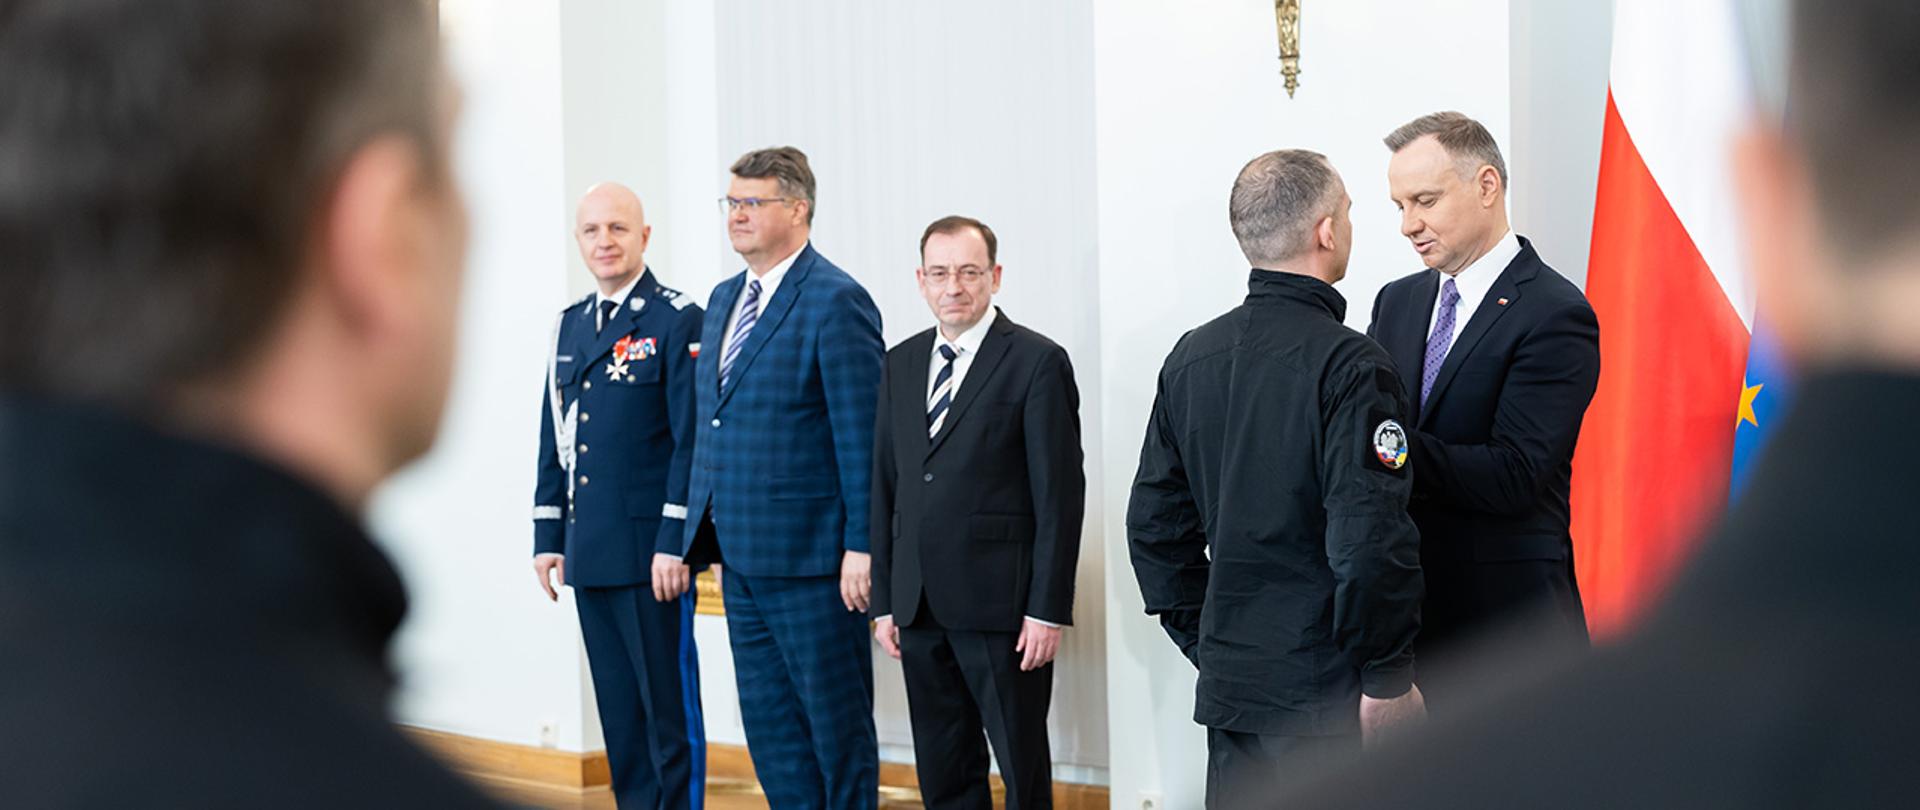 Prezydent Andrzej Duda oraz minister Mariusz Kamiński wręczyli Krzyże Zasługi za Dzielność funkcjonariuszom kontyngentu humanitarnego polskiej Policji, którzy brali udział w misji w Ukrainie 